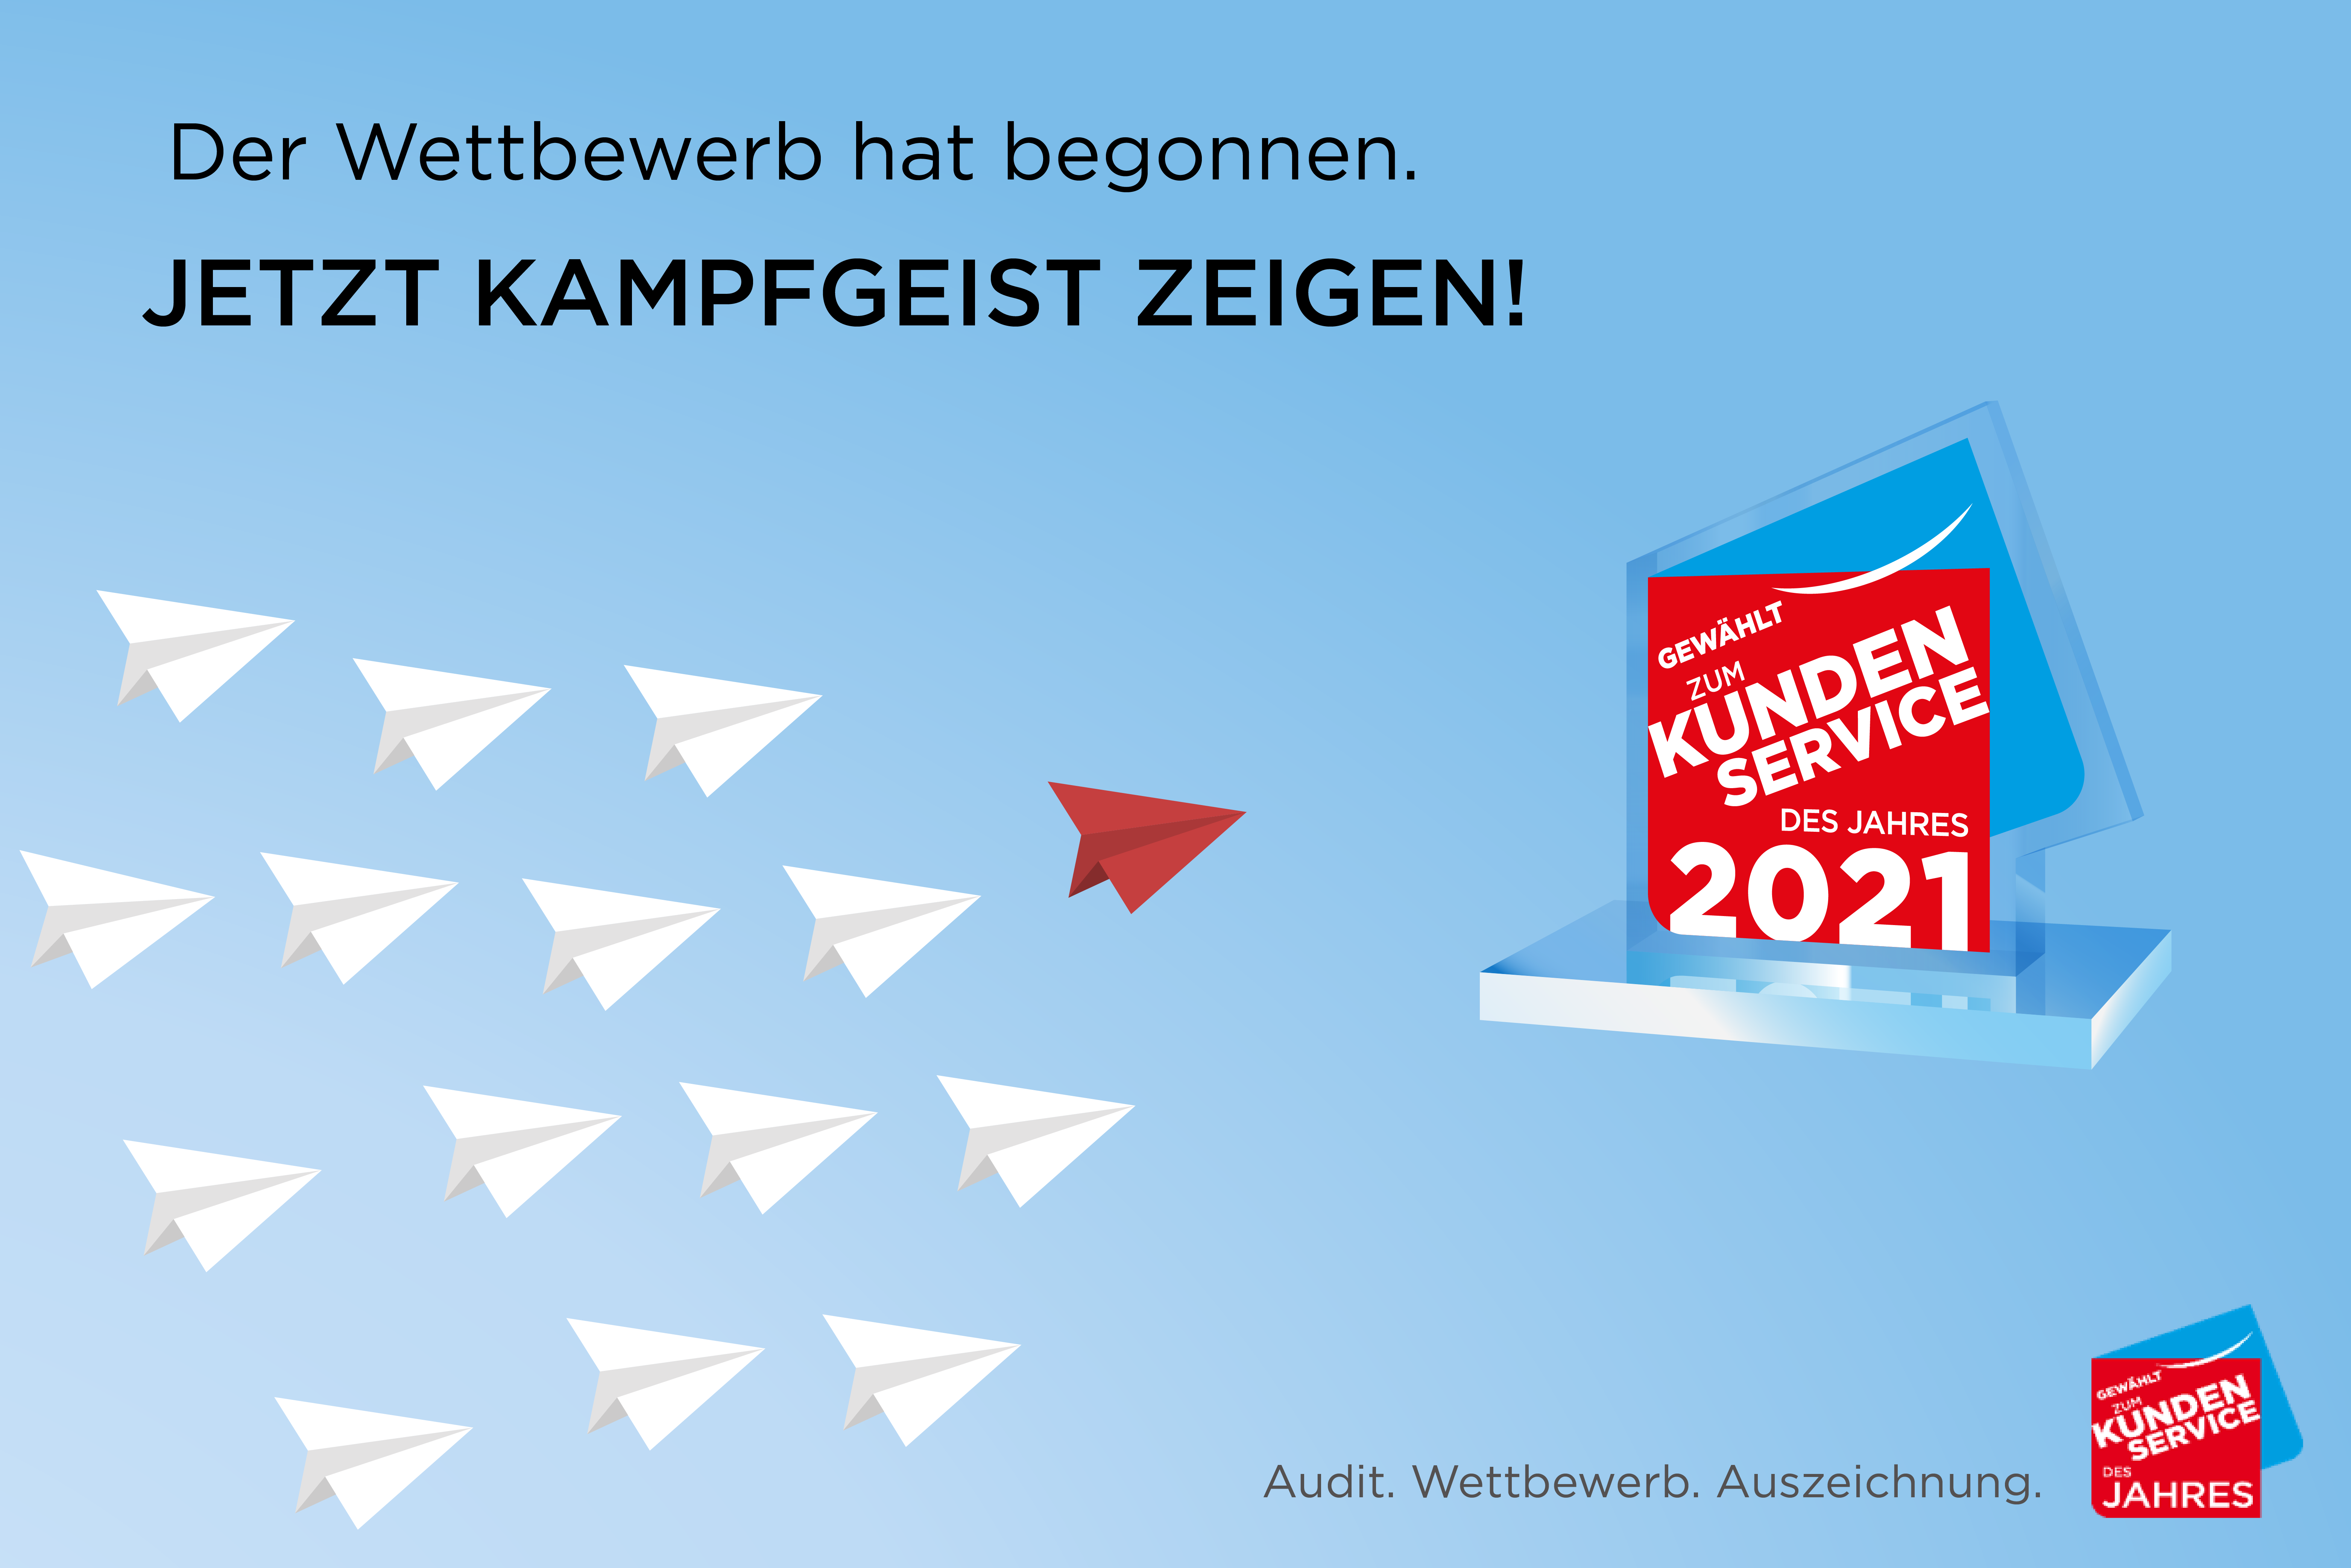 Wettbewerbstart von Gewählt zum Kundenservice des Jahres 2021 in Deutschland